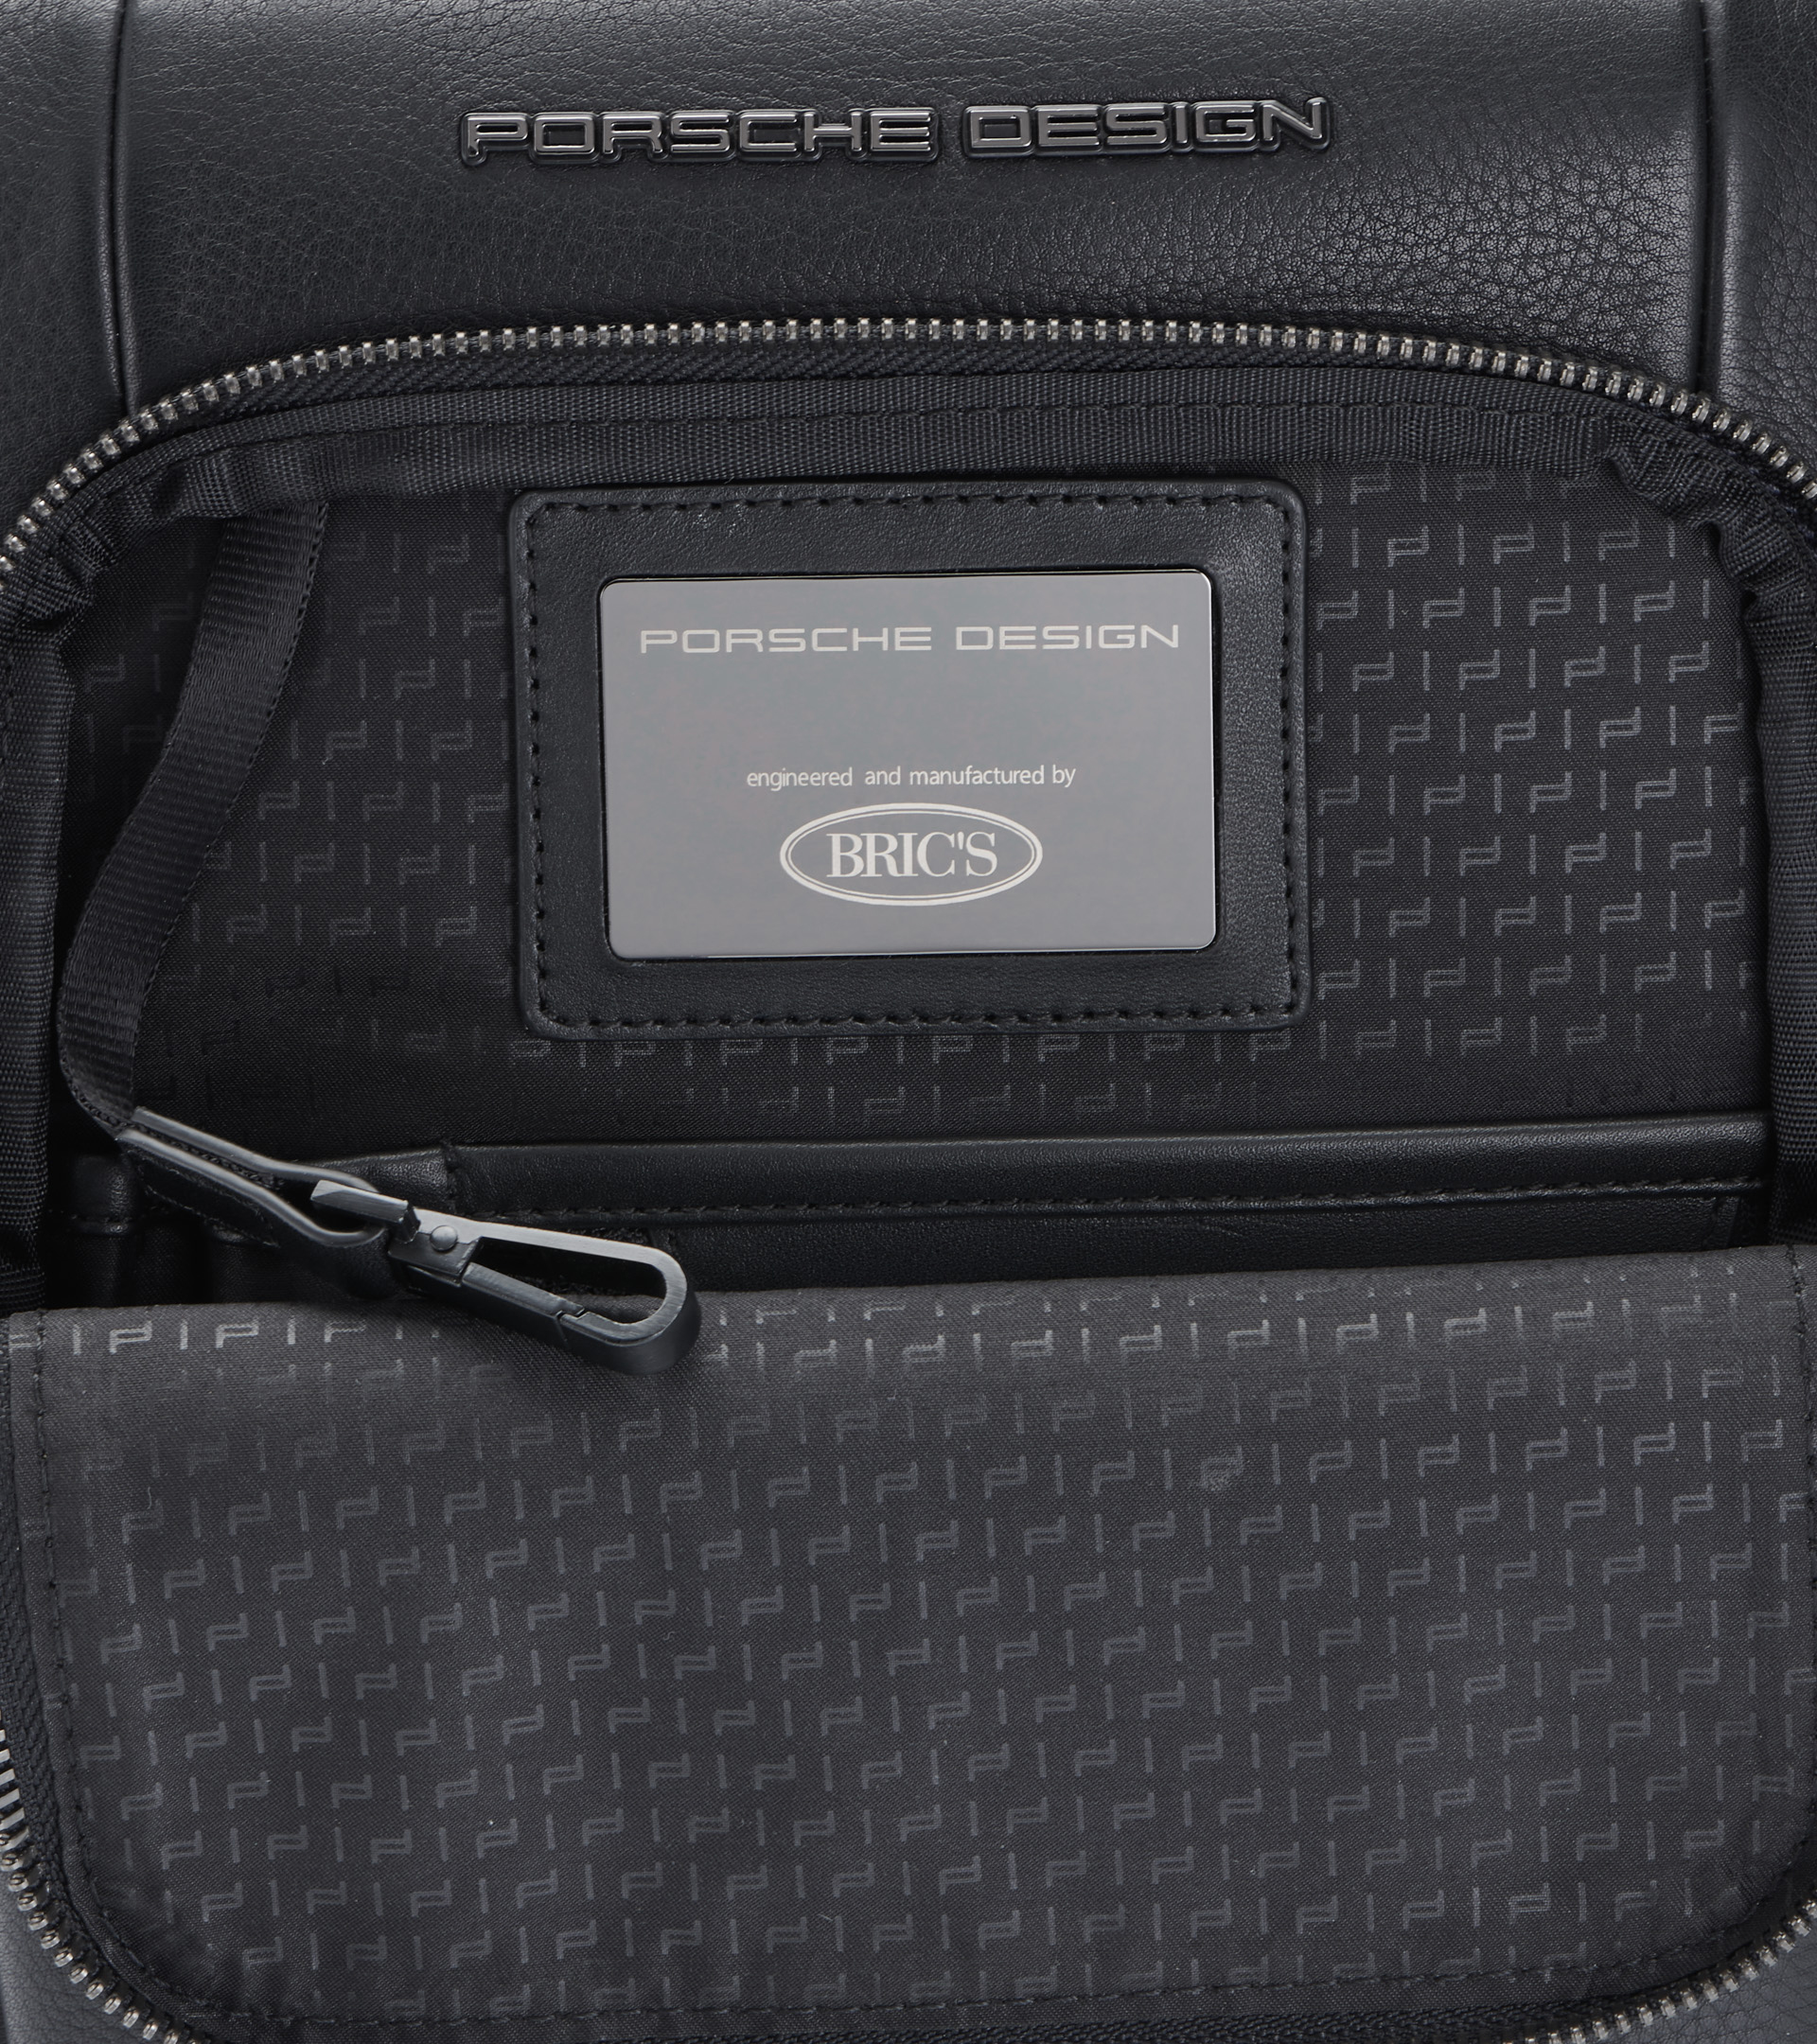 Men shoulder bag Porsche Design Roadster S black leather slim casual  crossbody